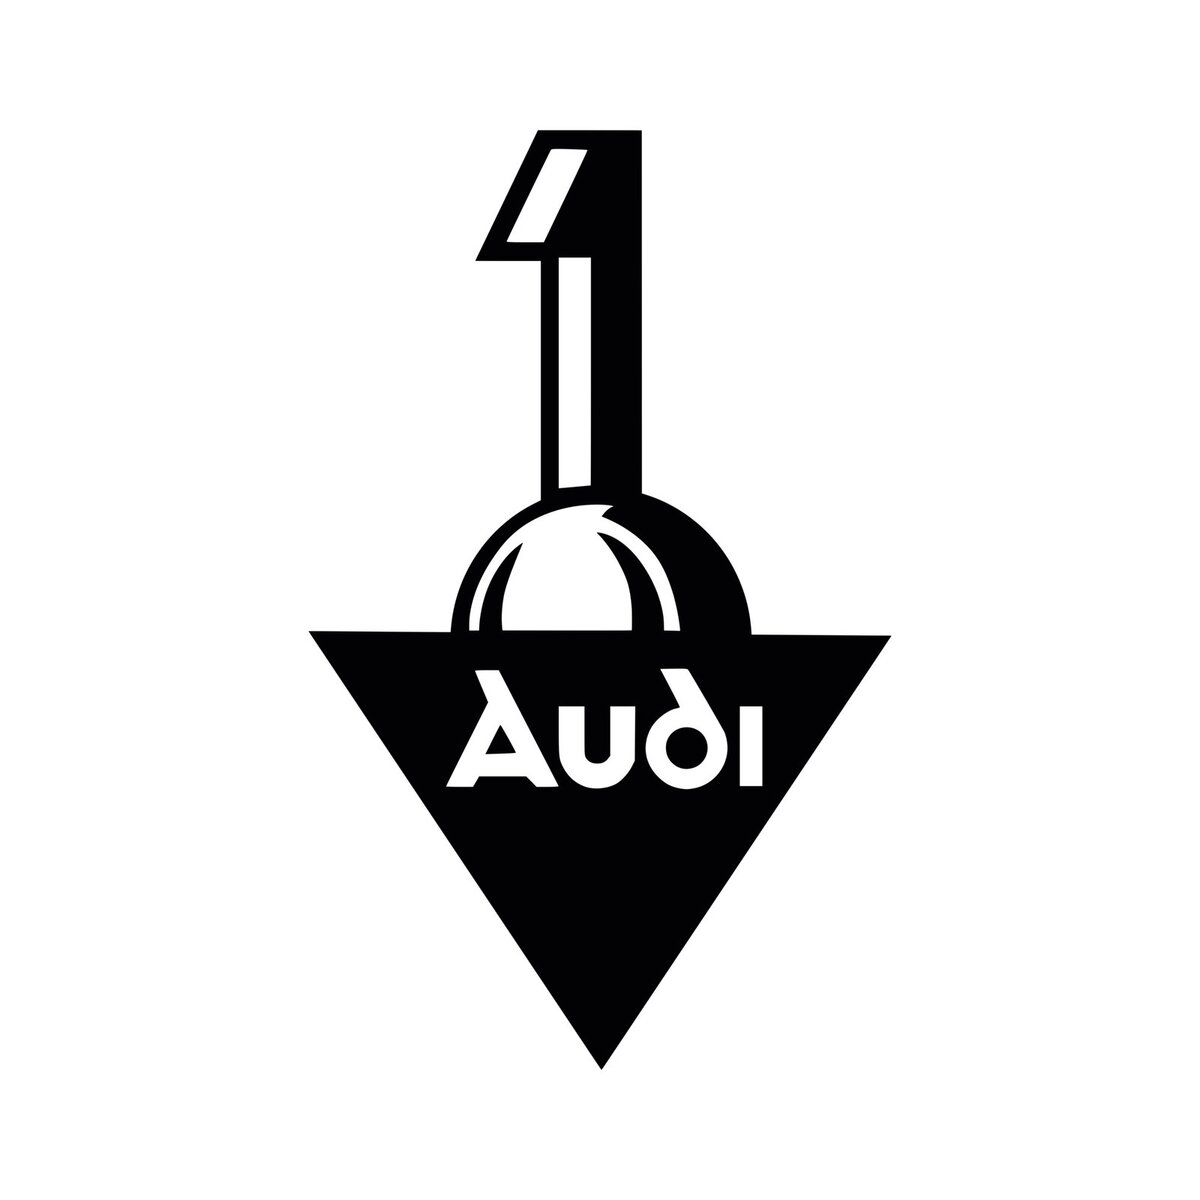    Первый логотип Audi появился после того, как немецкий инженер Август Хорьх покинул основанную им фирму A. Horch & Cie. Motorwagenwerke AG из-за конфликта с финансовым директором и создал в 1909 году новую. Названием для последней стало прочтение фамилии Хорьха на латыни, а логотипом — объемная цифра 1 на перевернутом черном треугольнике с прописной надписью Audi.